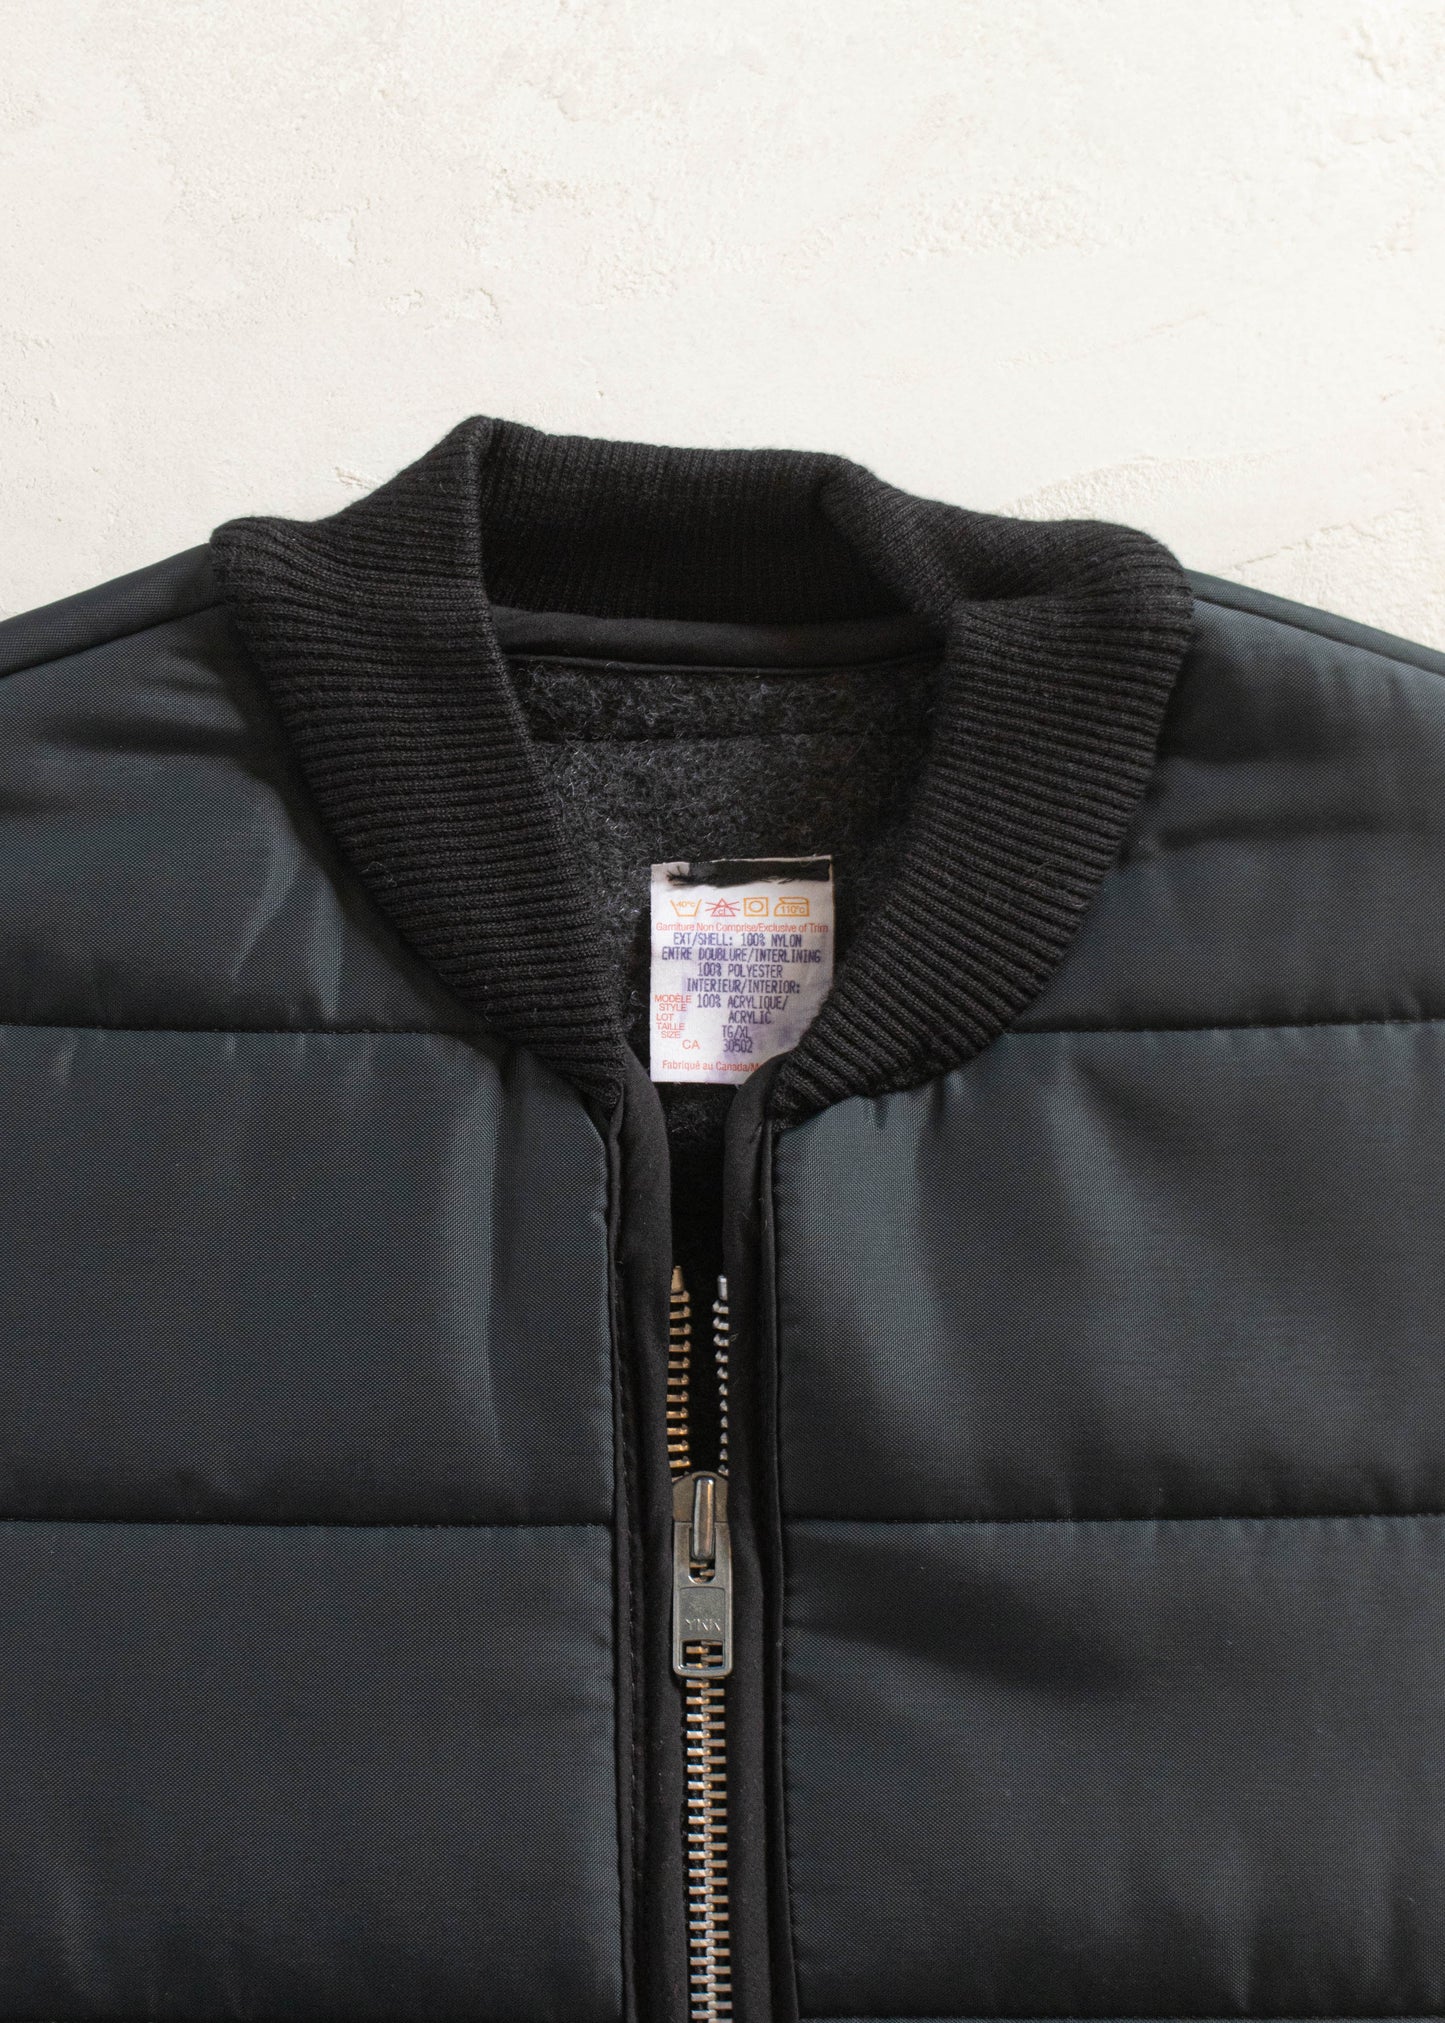 1980s Deadstock Workwear Nylon Vest Size L/XL